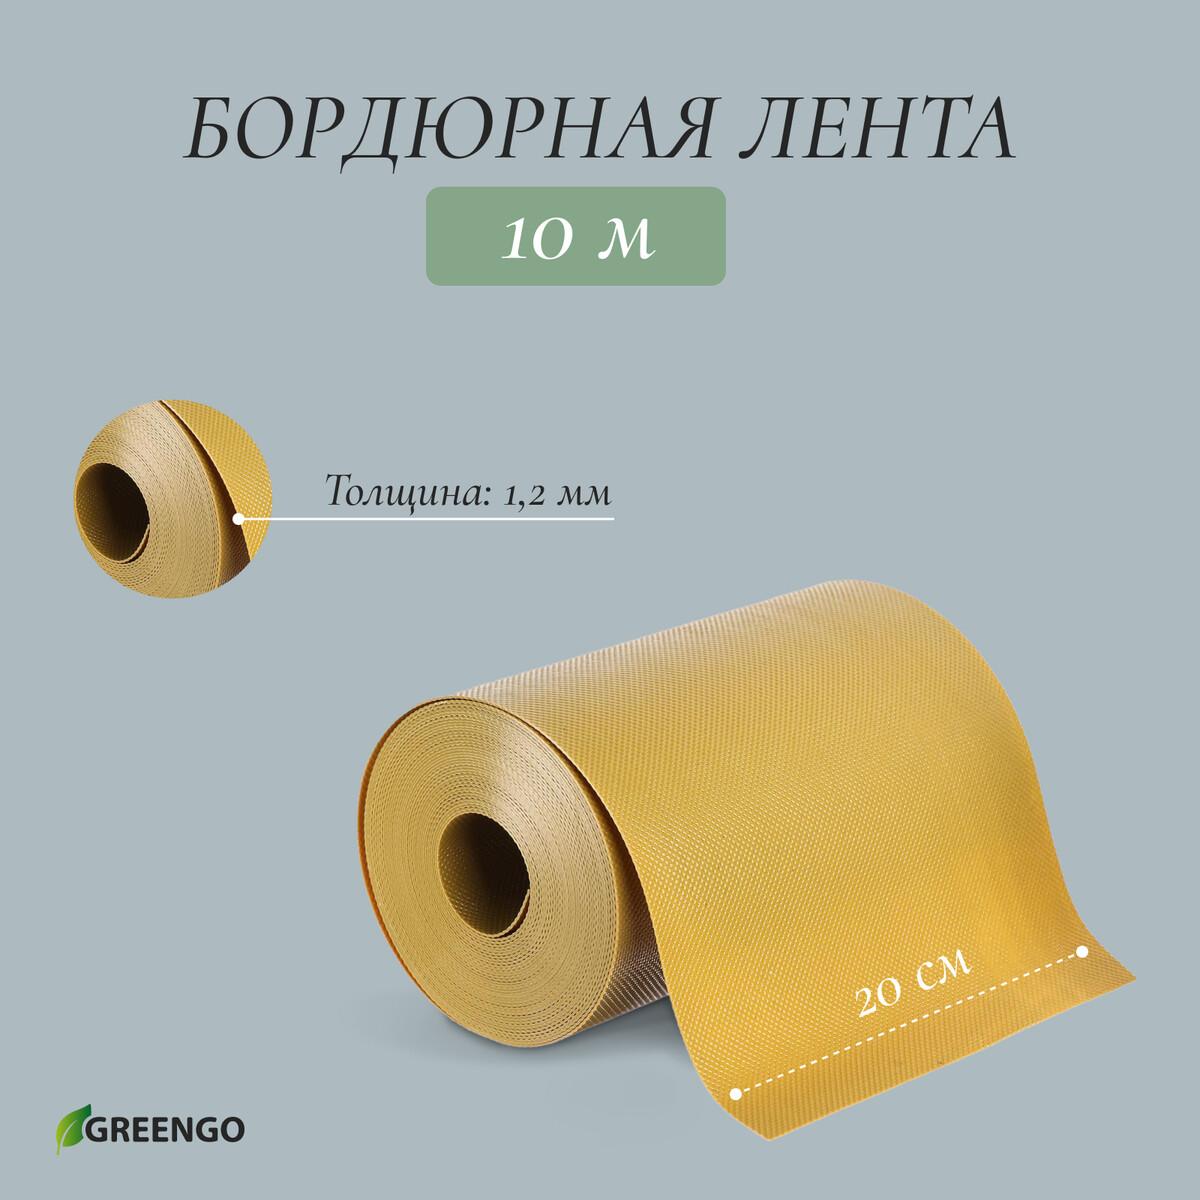 Лента бордюрная, 0.2 × 10 м, толщина 1.2 мм, пластиковая, желтая, greengo лента бордюрная 0 15 × 9 м толщина 0 6 мм пластиковая гофра зеленая greengo